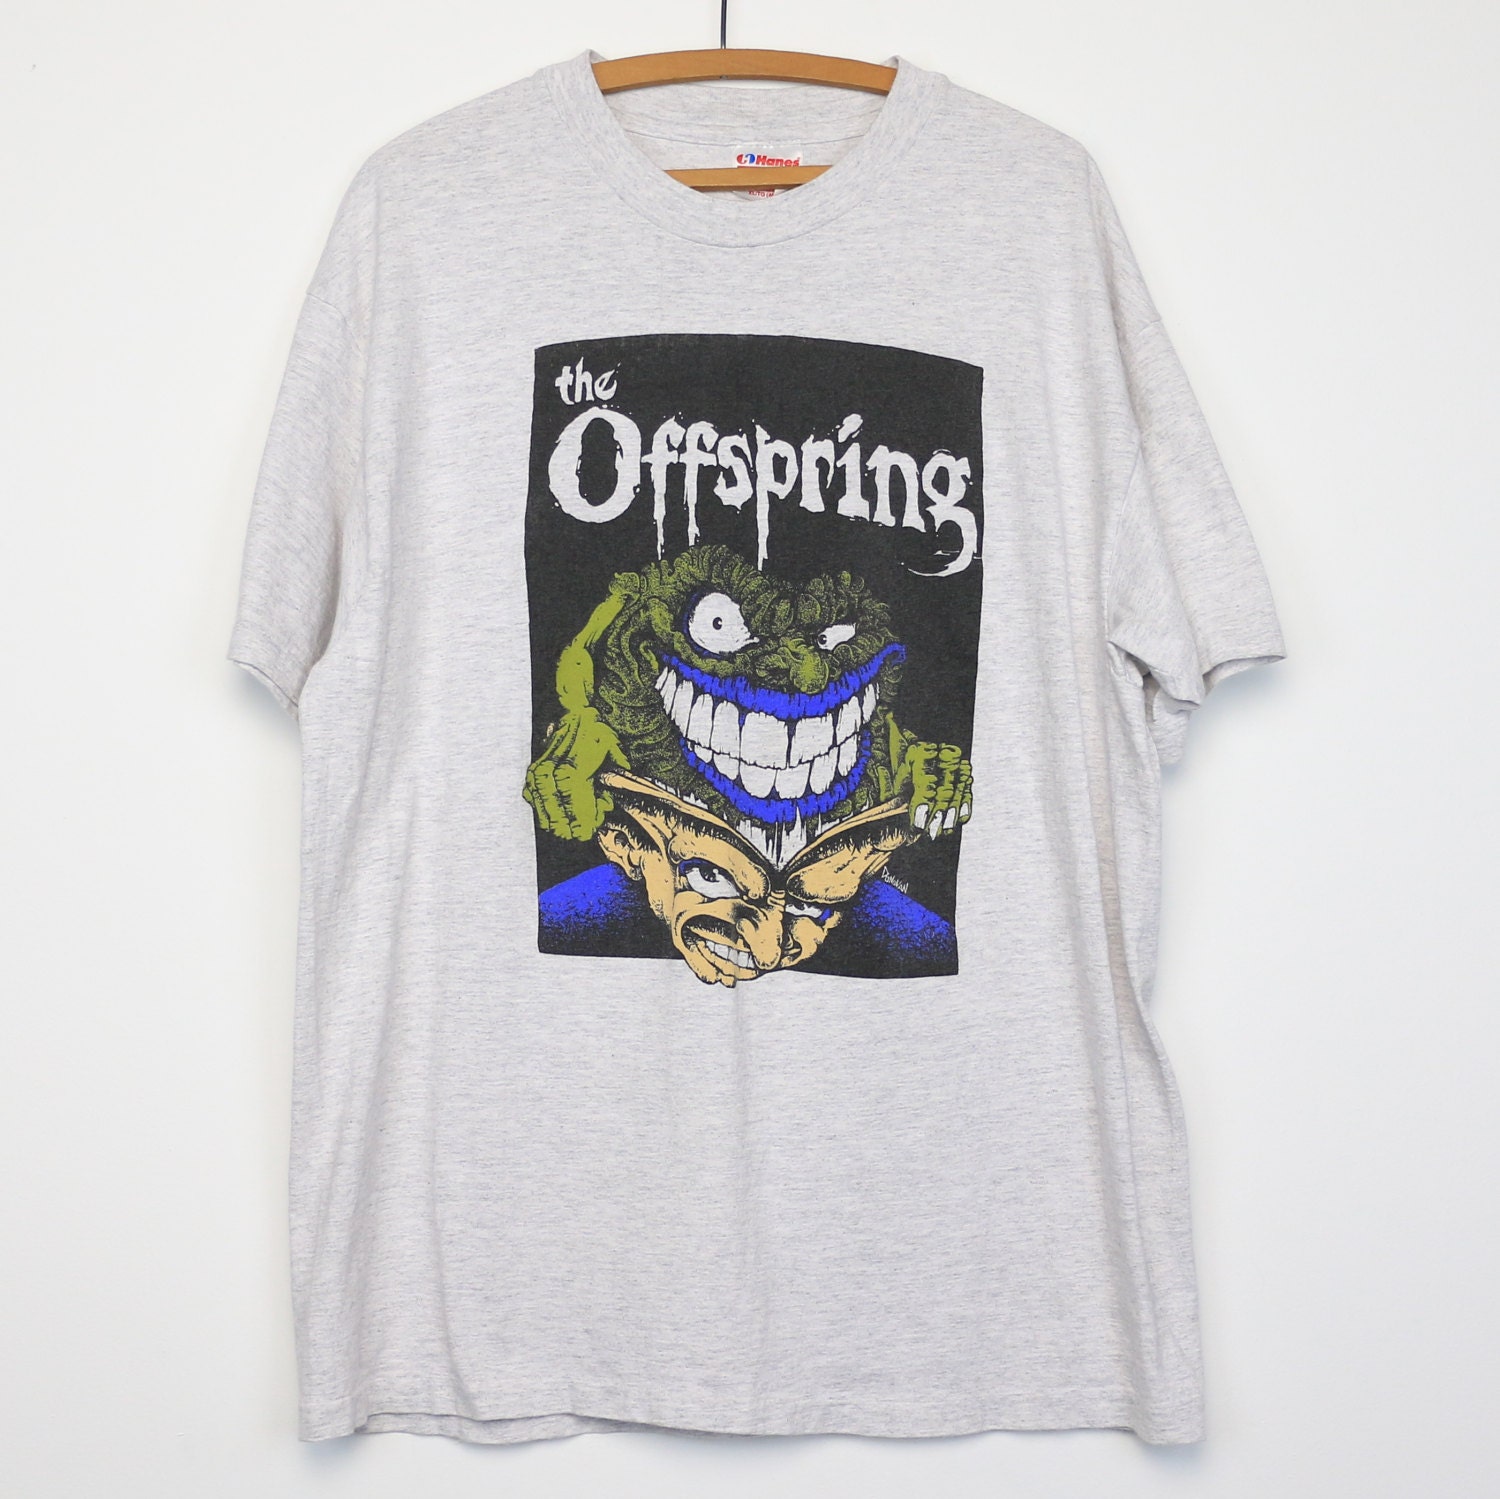 The Offspring Shirt Vintage tshirt 1994 Smash Studio Album